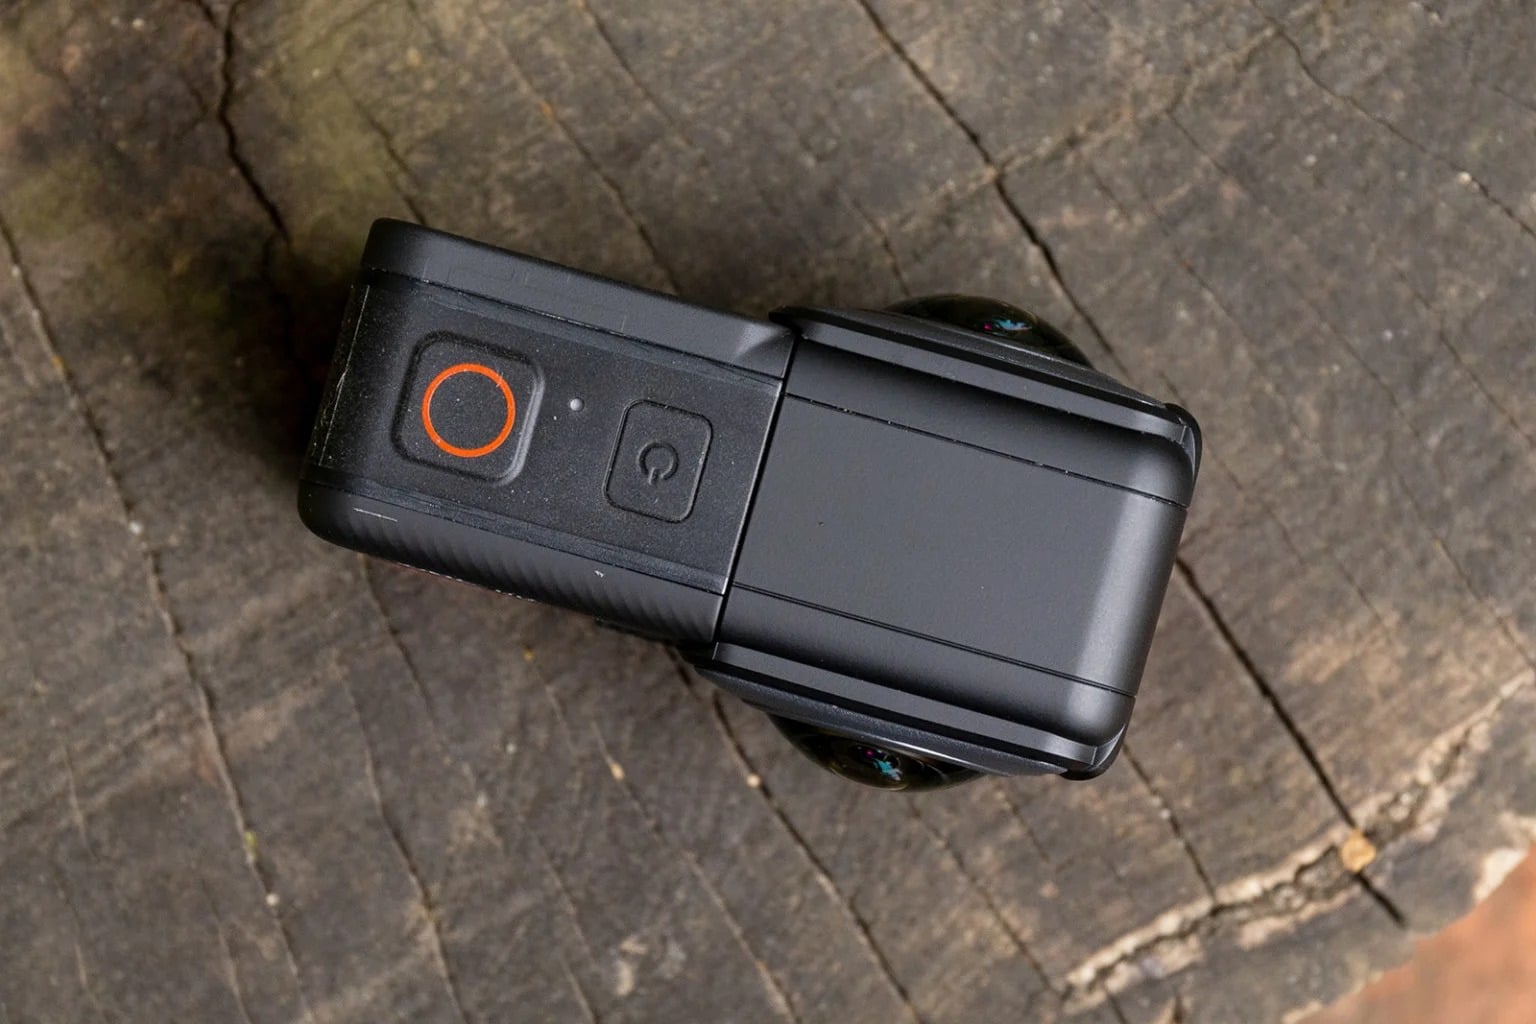 Hướng dẫn sử dụng Invisible Stick cho các camera của Insta360, chiếc gậy vô hình đem đến các thước phim độc đáo